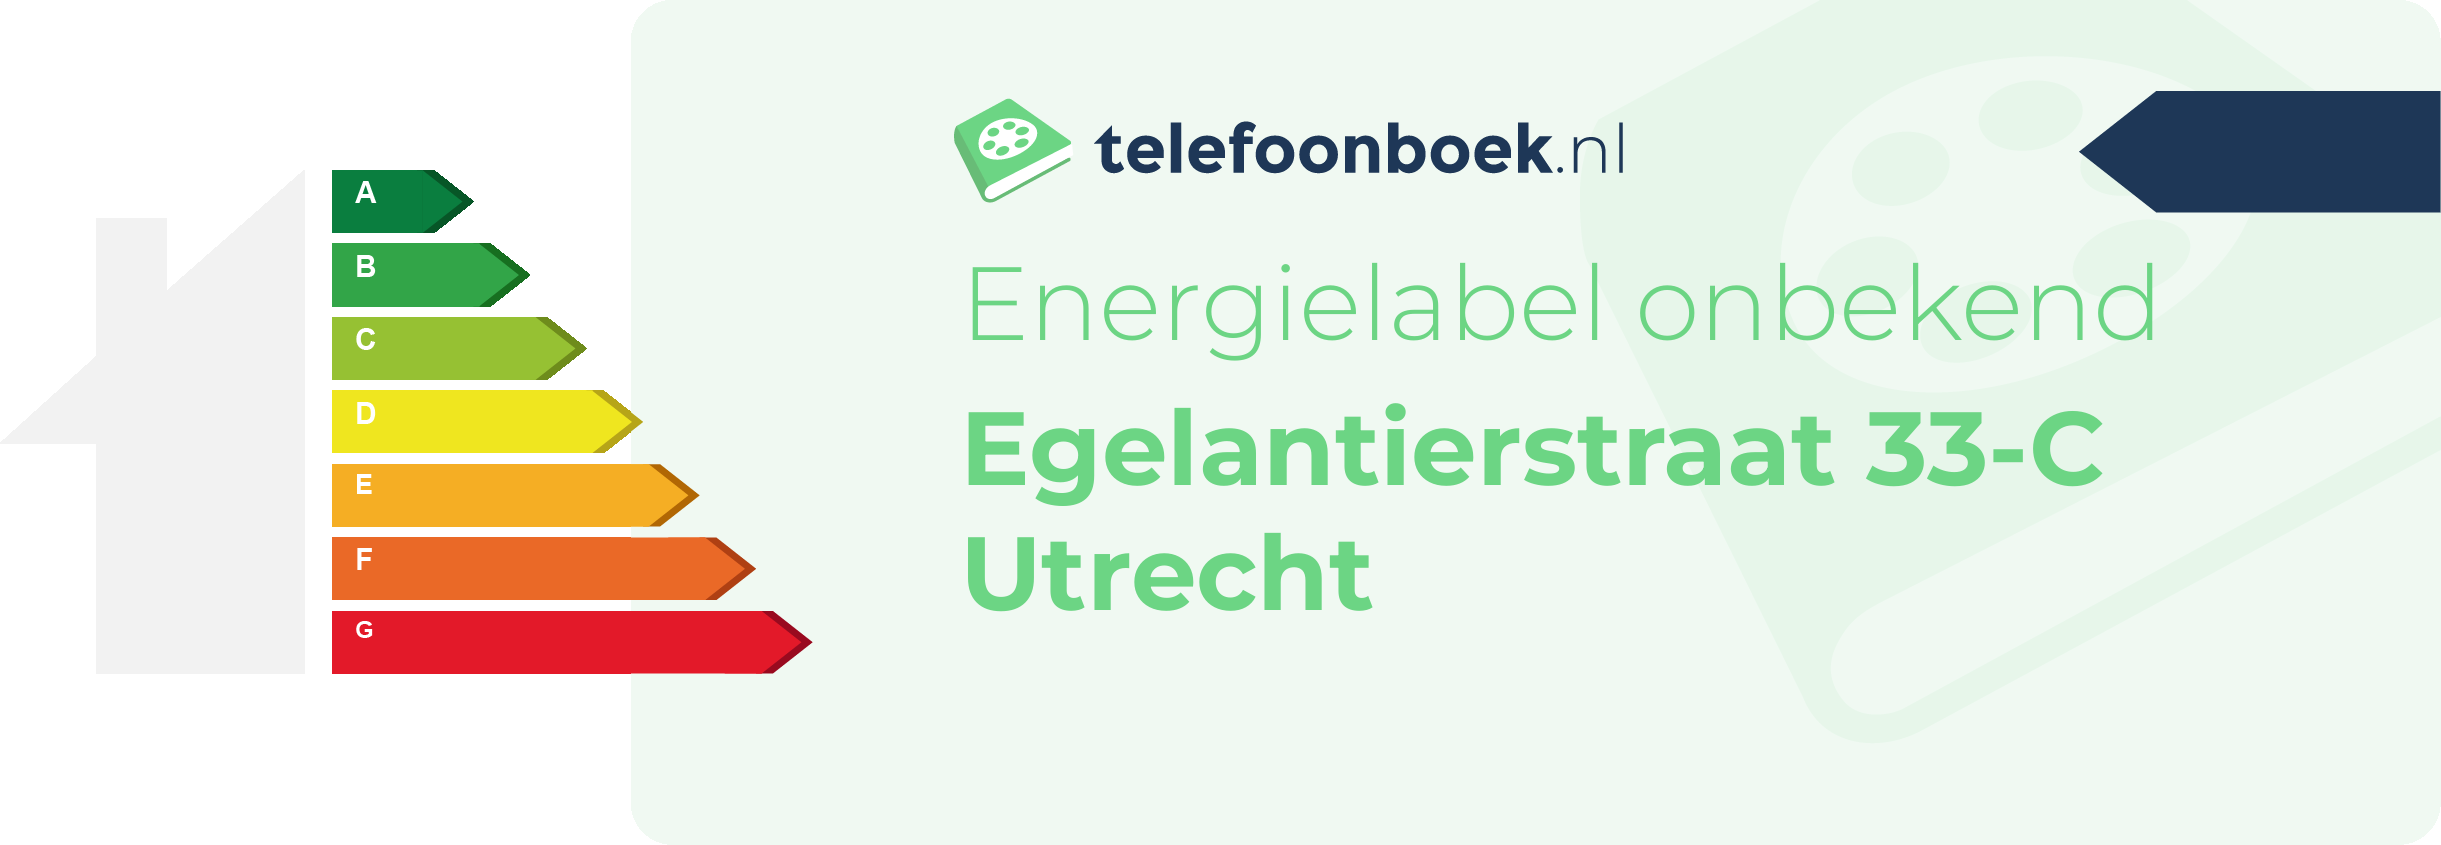 Energielabel Egelantierstraat 33-C Utrecht